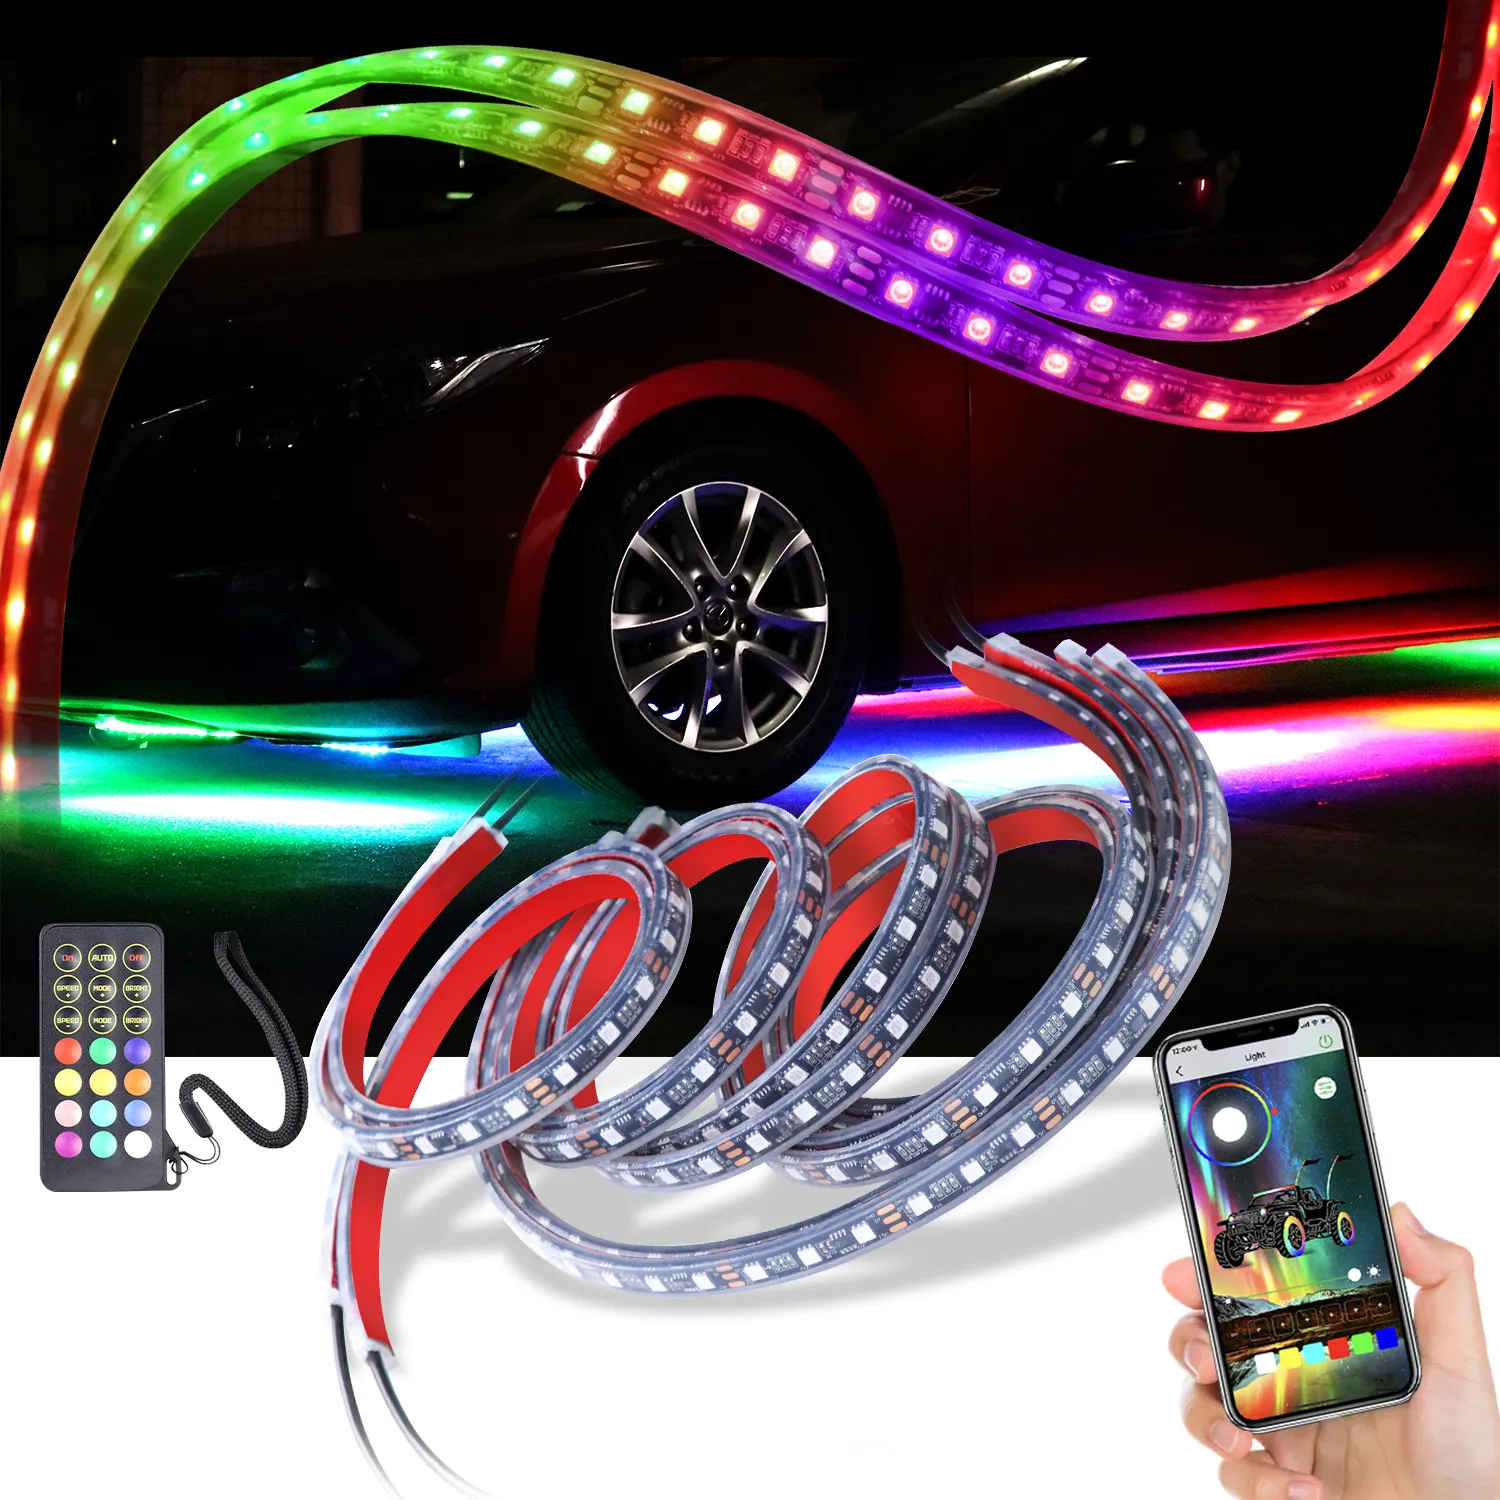 Lampu Neon Mobil Di Bawah Cahaya Warna <span class=keywords><strong>RGB</strong></span>, Lampu Mobil Neon dengan Aplikasi BT dan Kendali Jarak Jauh dengan Fungsi Pembalik dan Rem